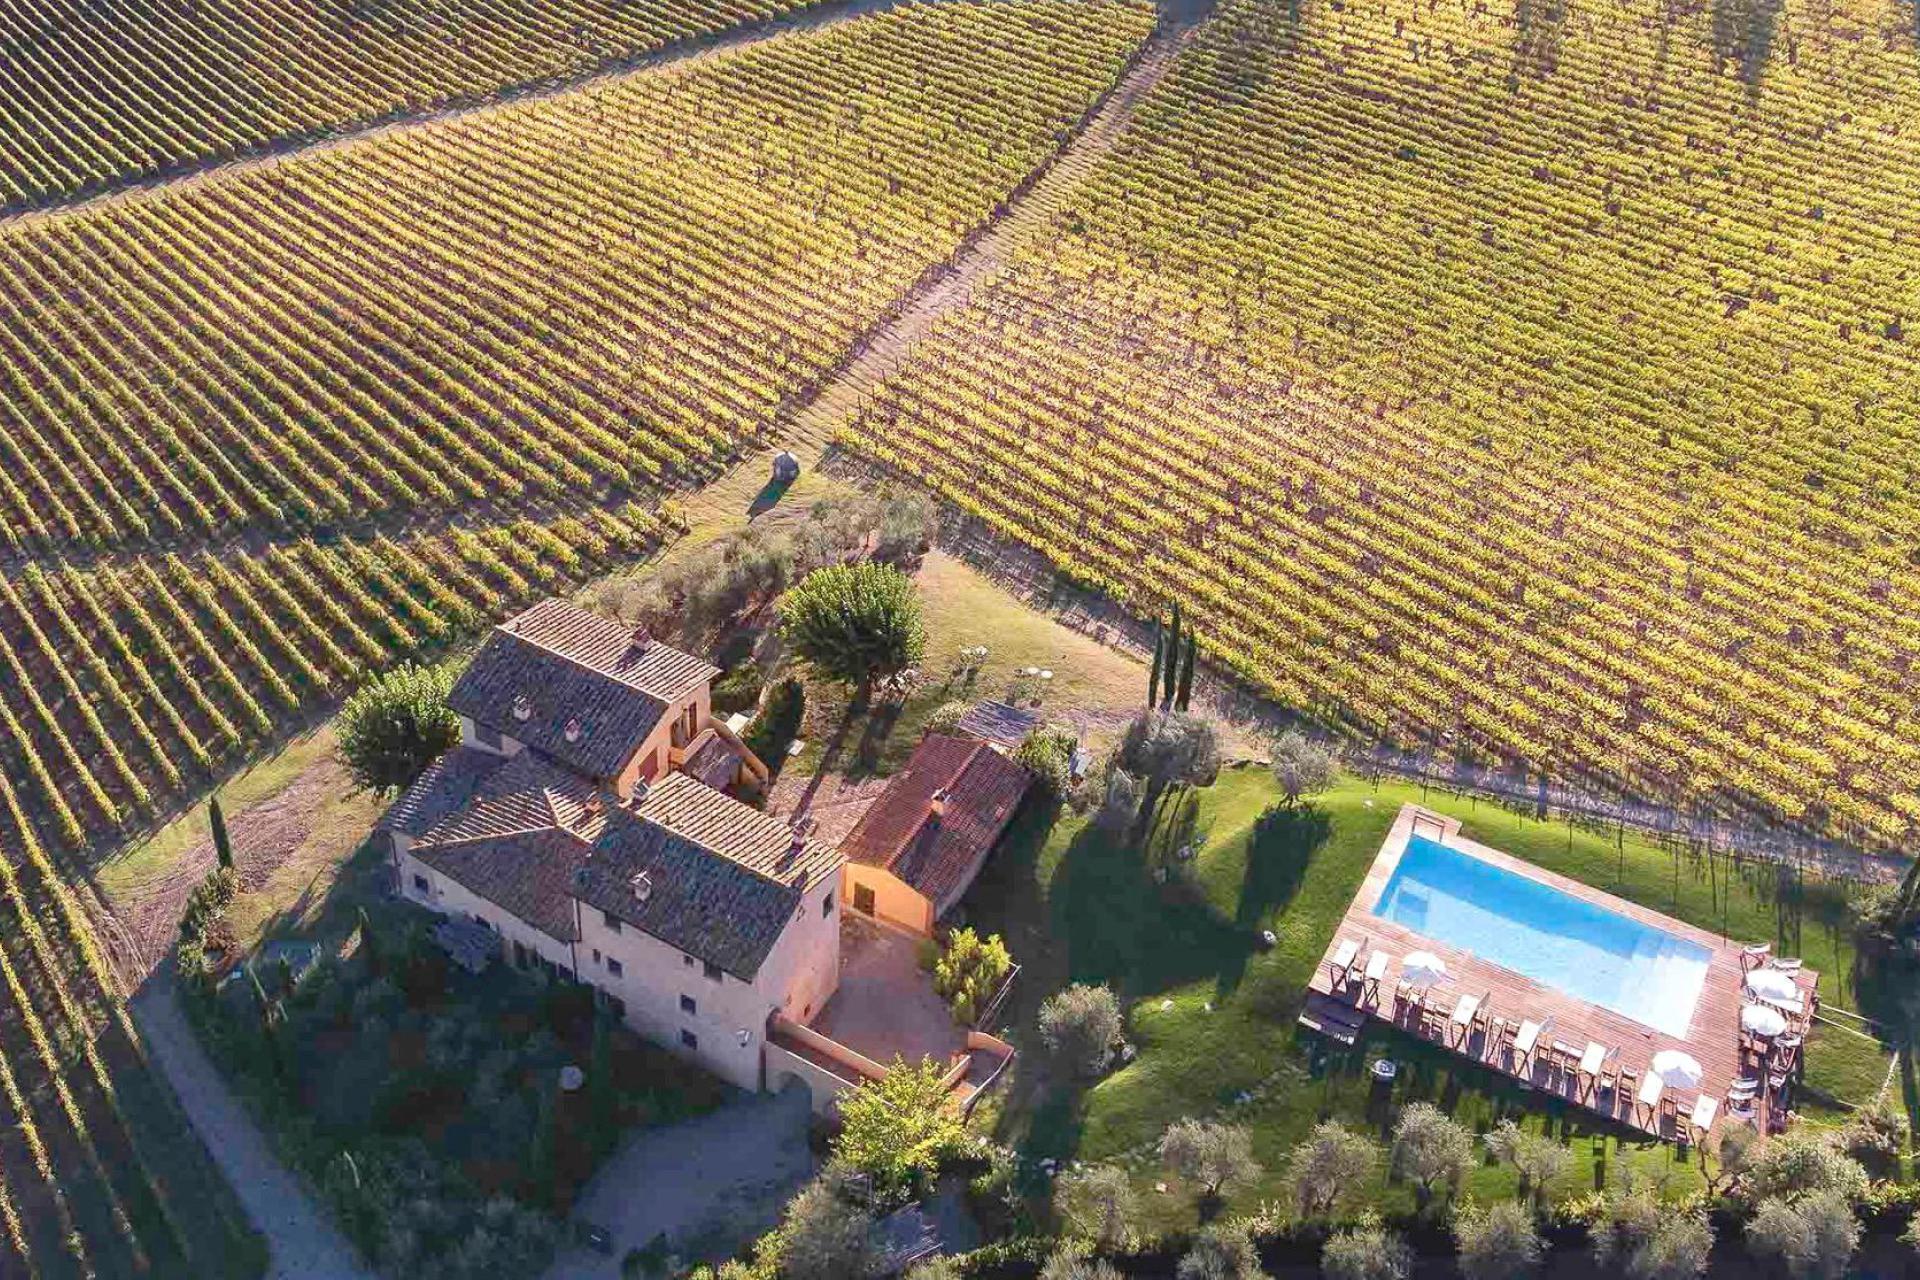 Gemütliche Weinfarm in der Nähe von Florenz